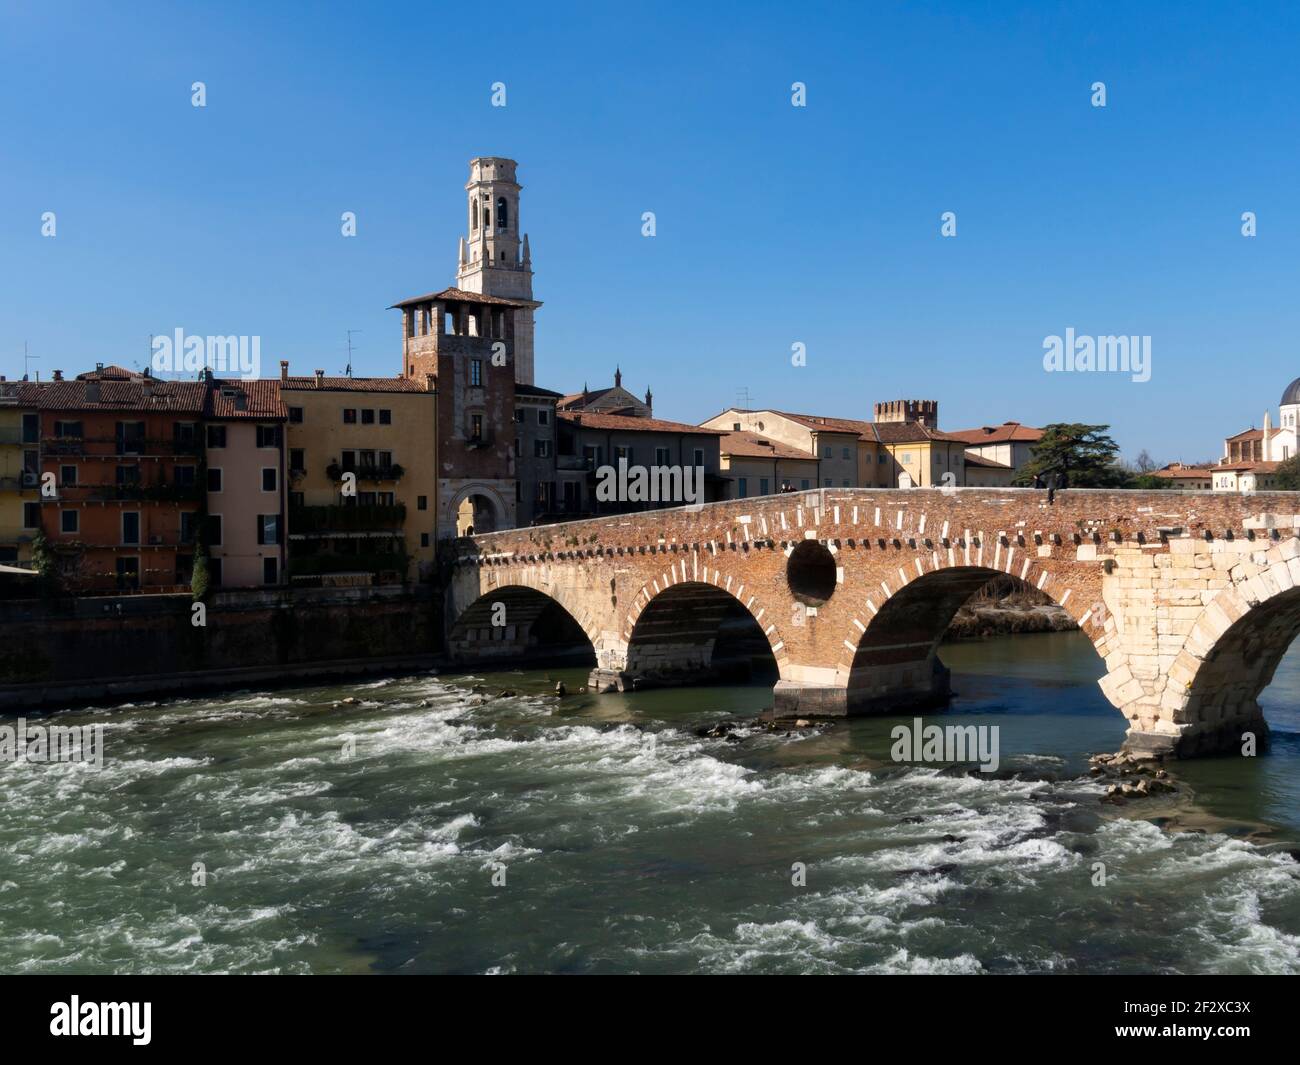 Il Ponte di pietra, il più antico ponte di Verona, è un ponte ad arco romano che attraversa il fiume Adige. Sotto il ponte, l'acqua b Foto Stock